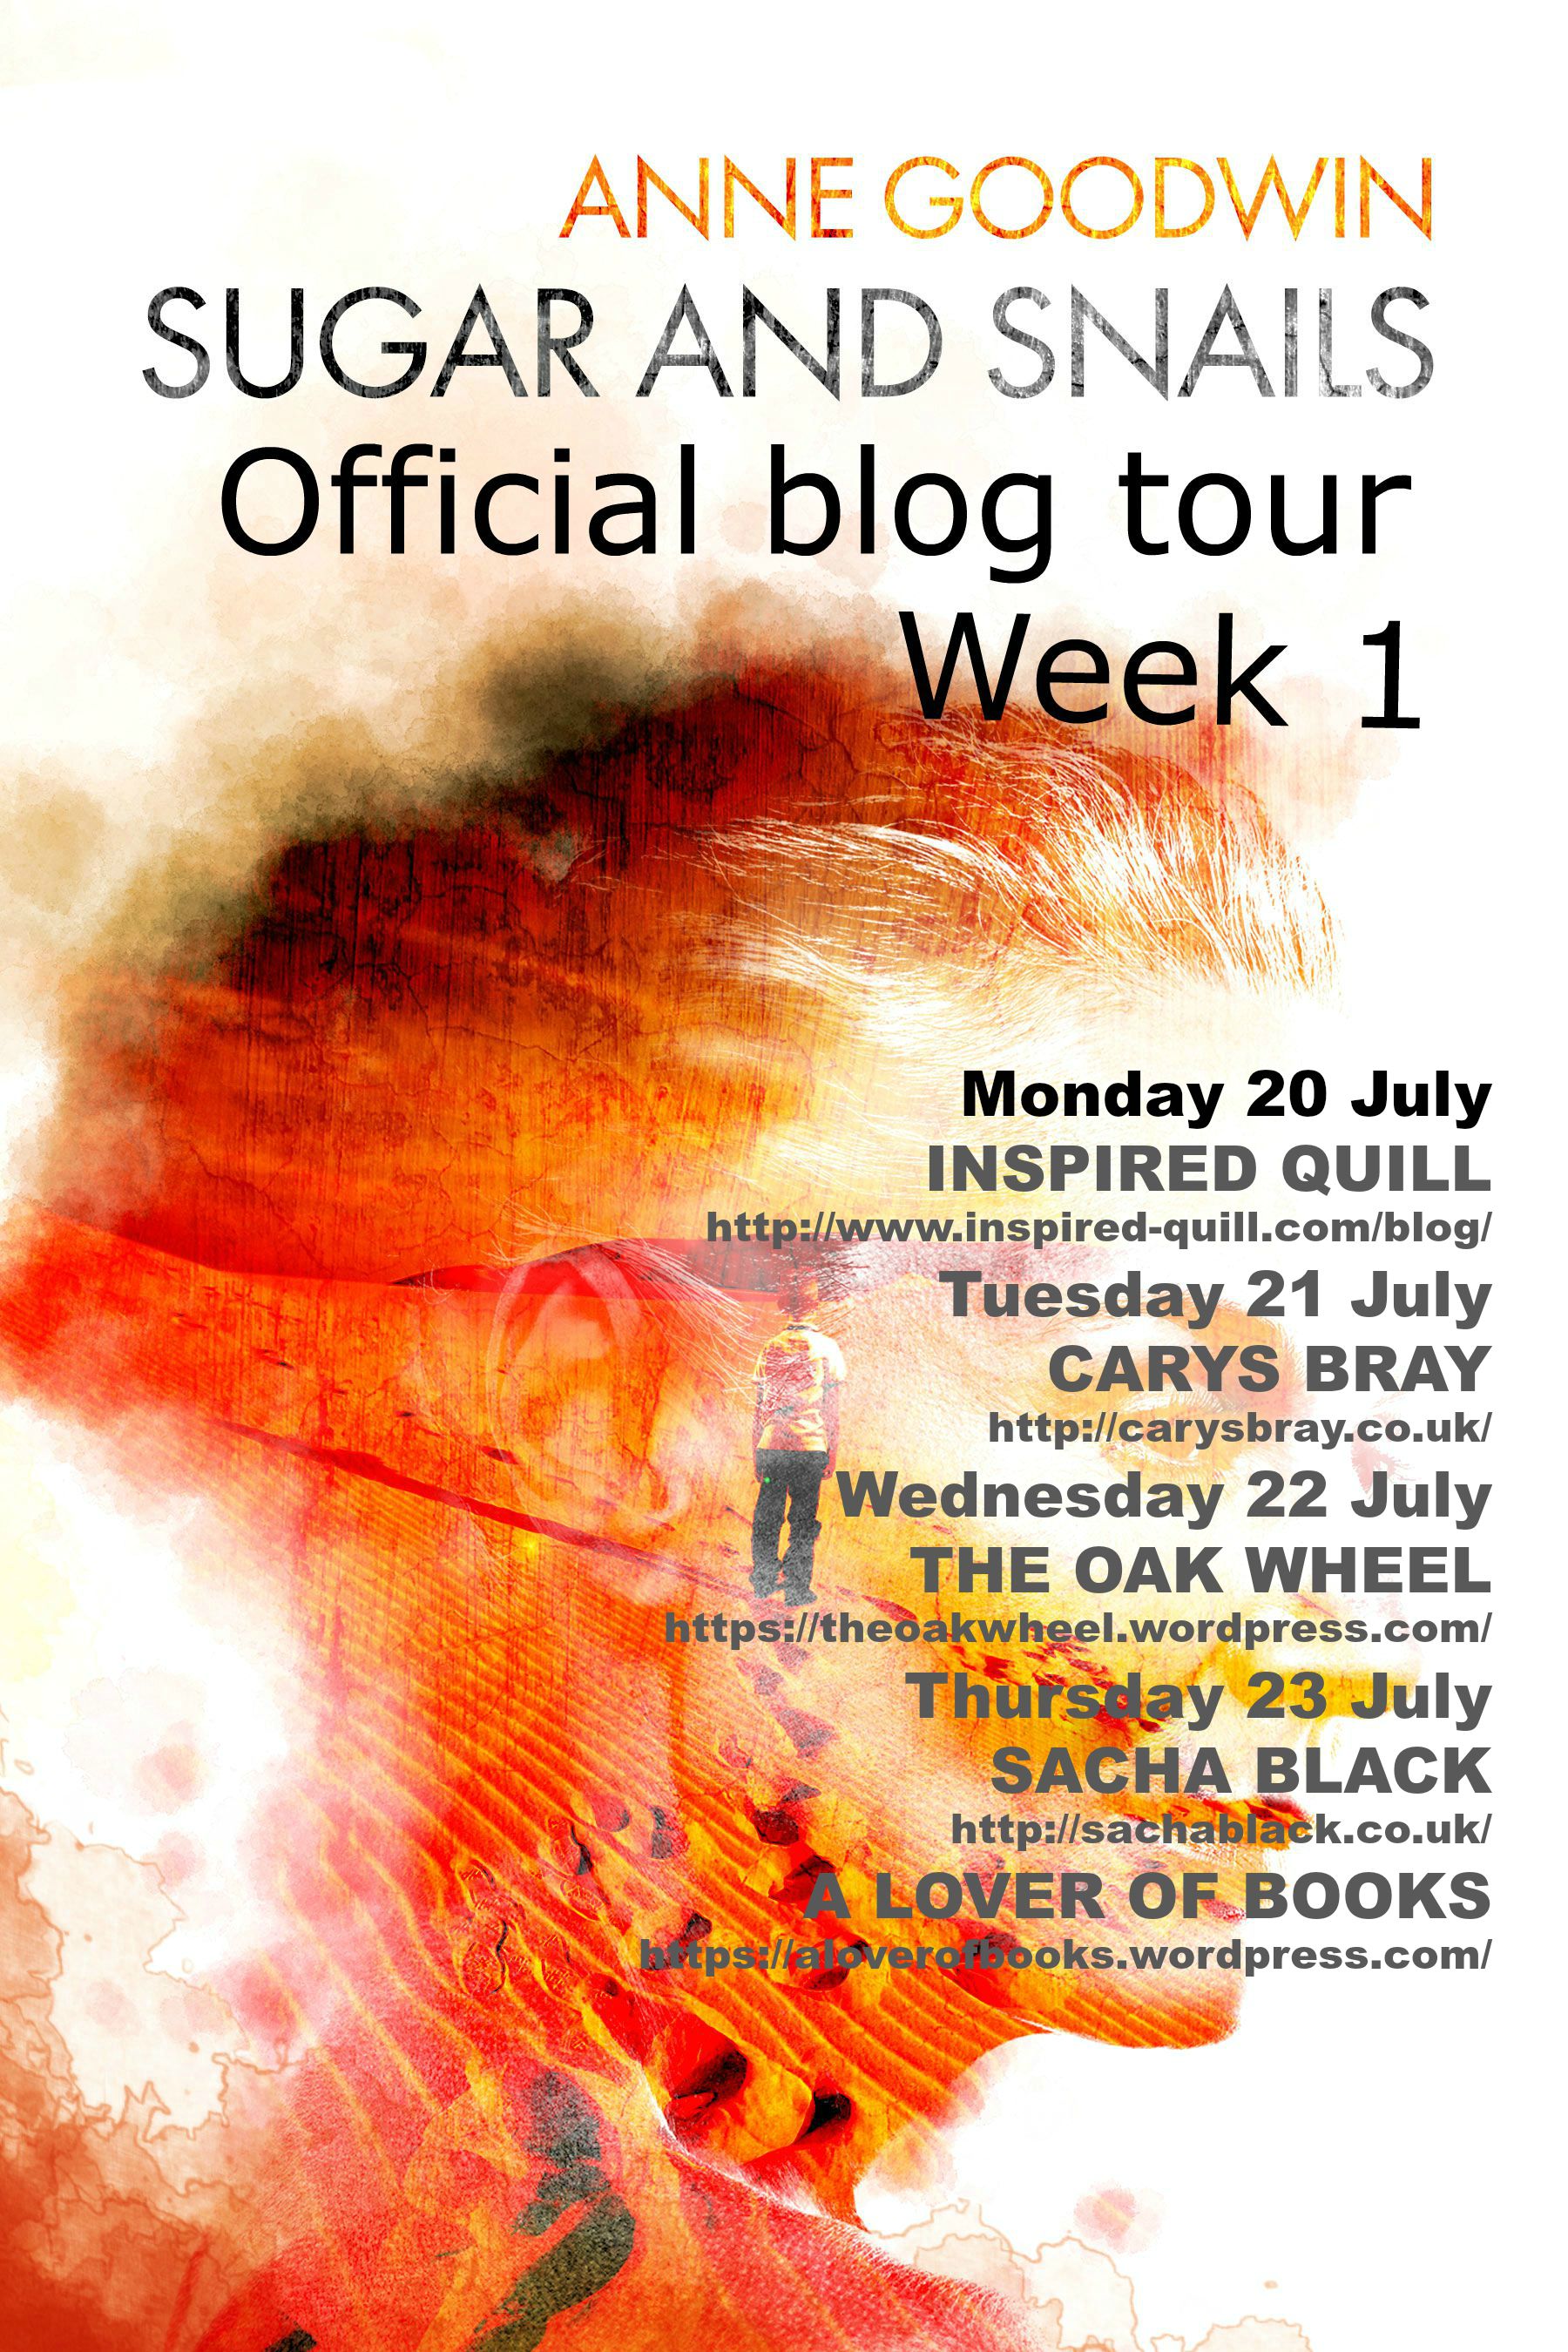 Blog tour week 1